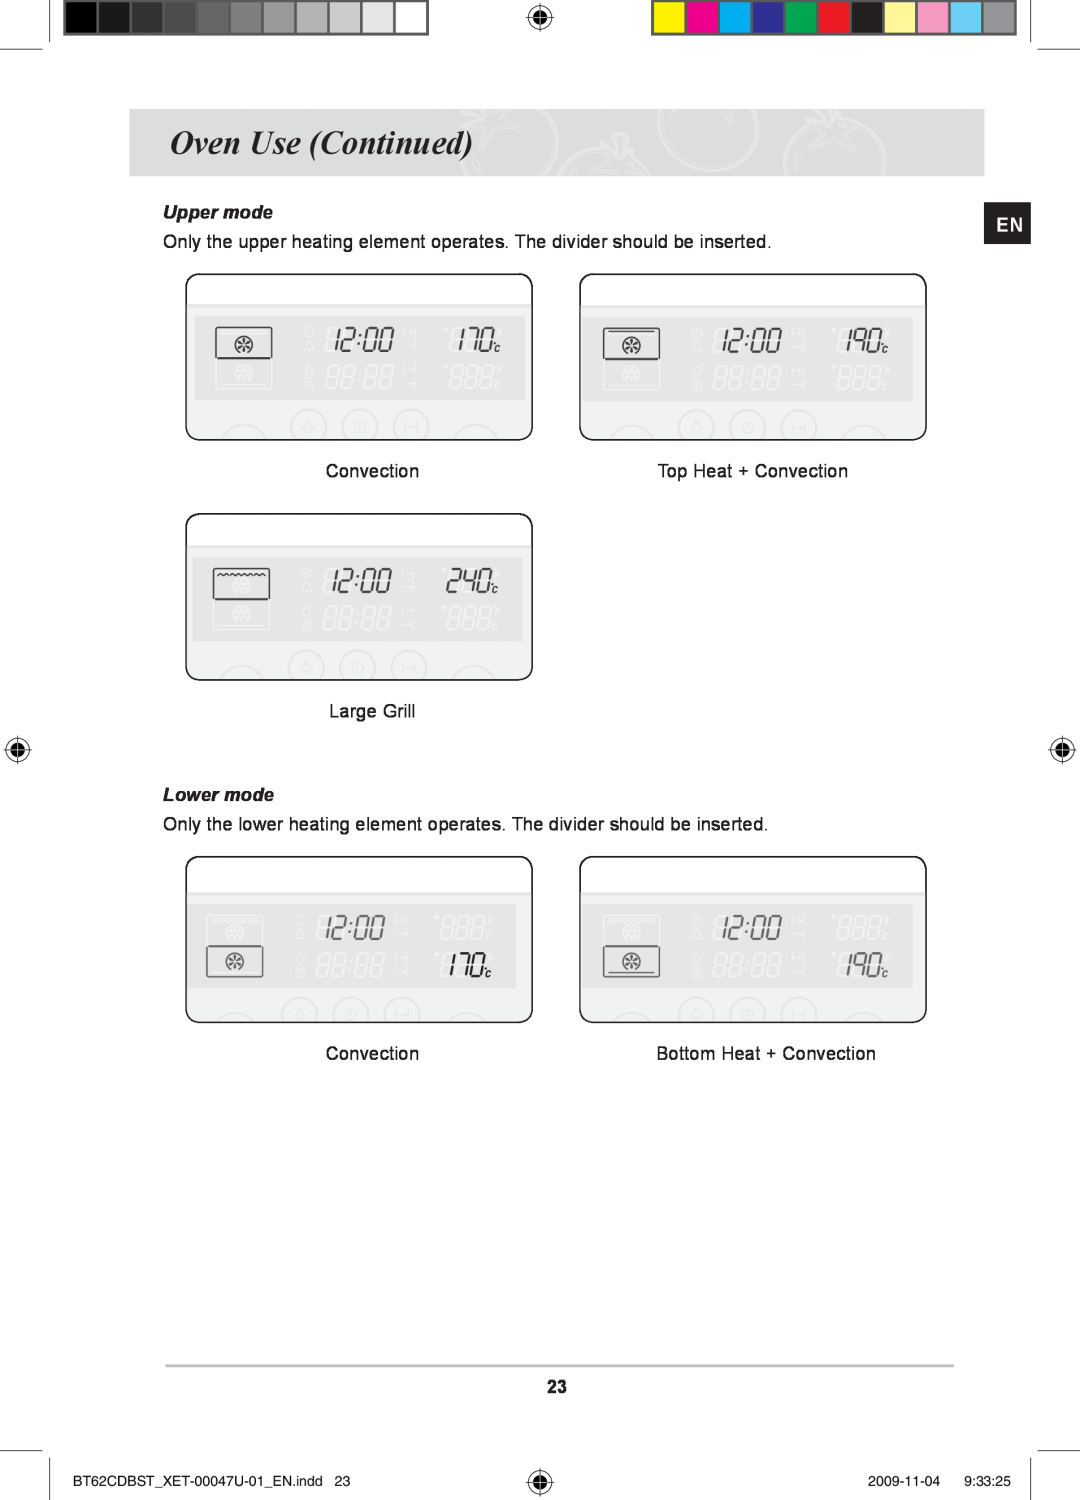 Samsung BT62CDBST/XET manual Oven Use Continued, Upper mode, Lower mode, BT62CDBSTXET-00047U-01EN.indd, 2009-11-04 